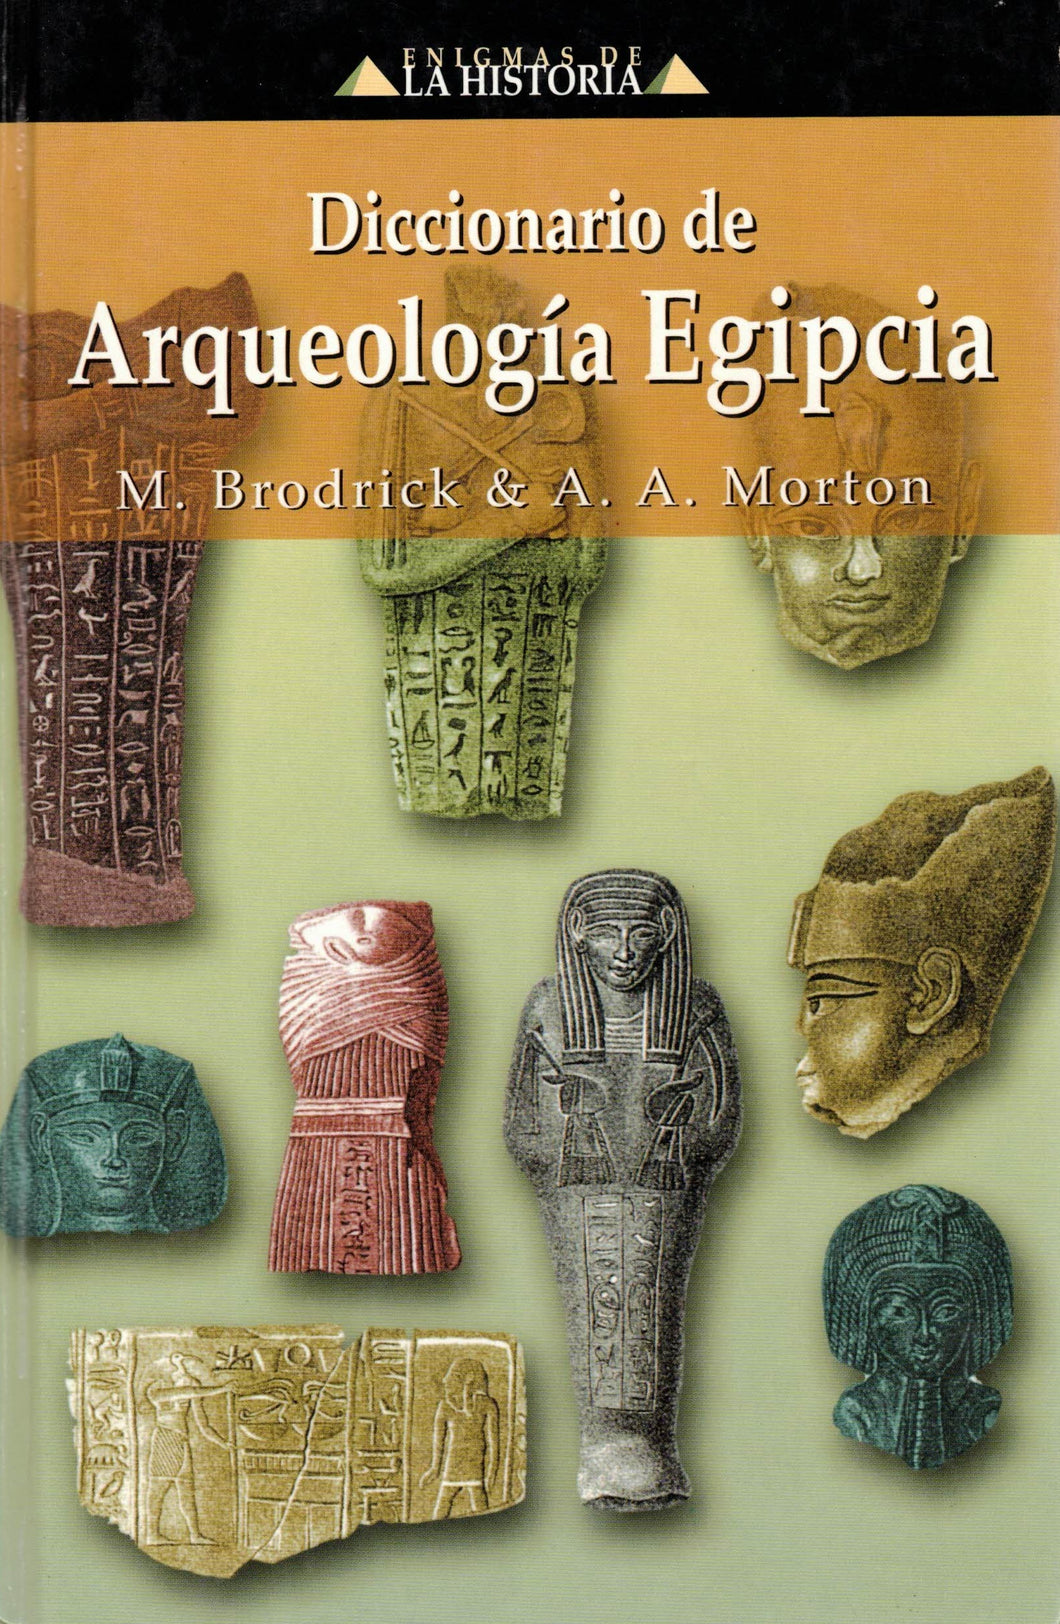 Diccionario de Arqueología Egipcia - M. BRODRICK & A.A. MORTON - C-198 (libro, tapa dura)(de segunda mano muy bueno)